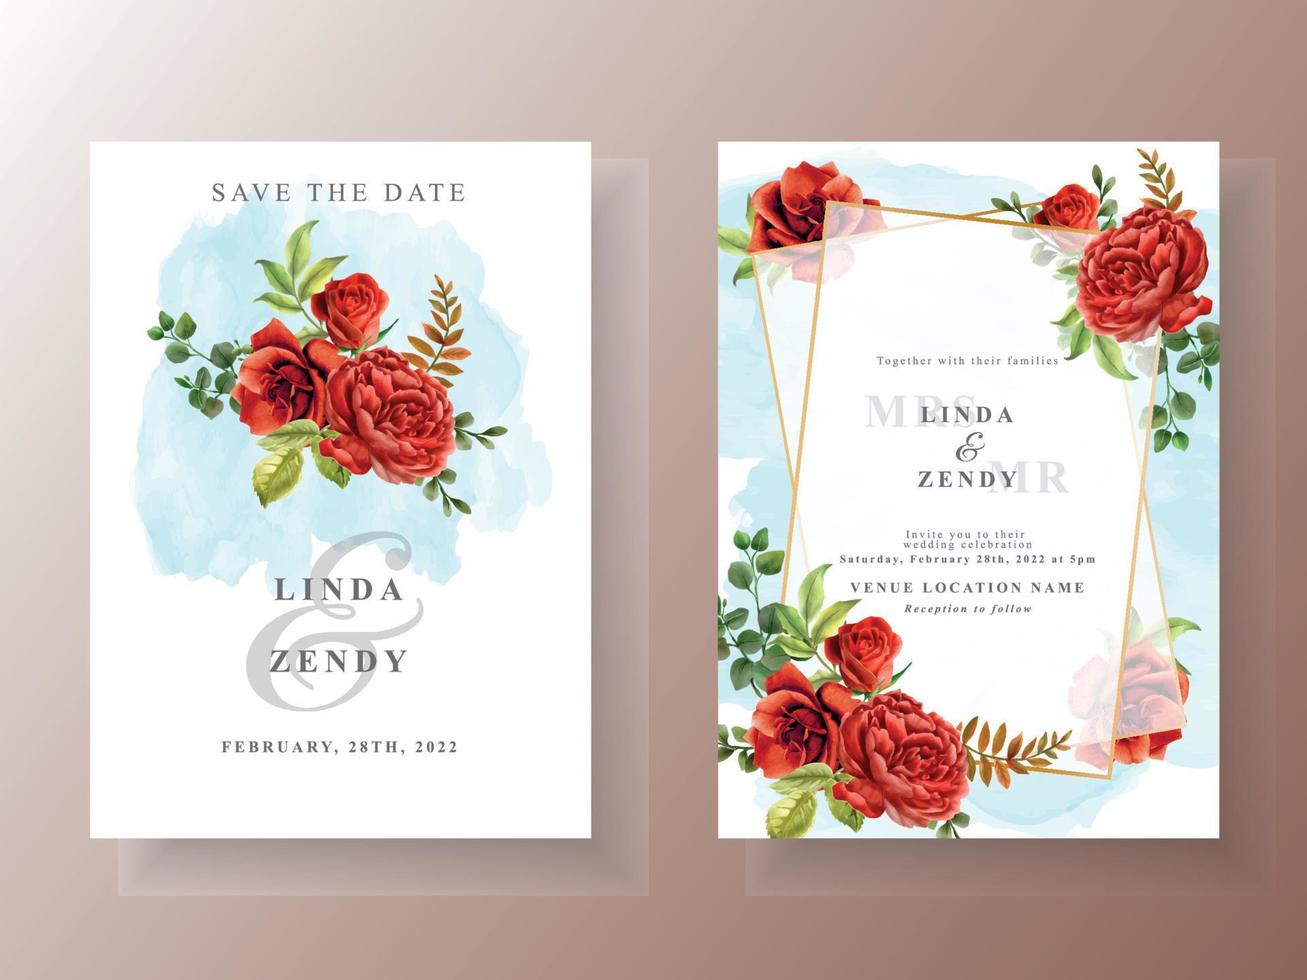 mooie rode rozen bruiloft uitnodigingskaartsjabloon vector